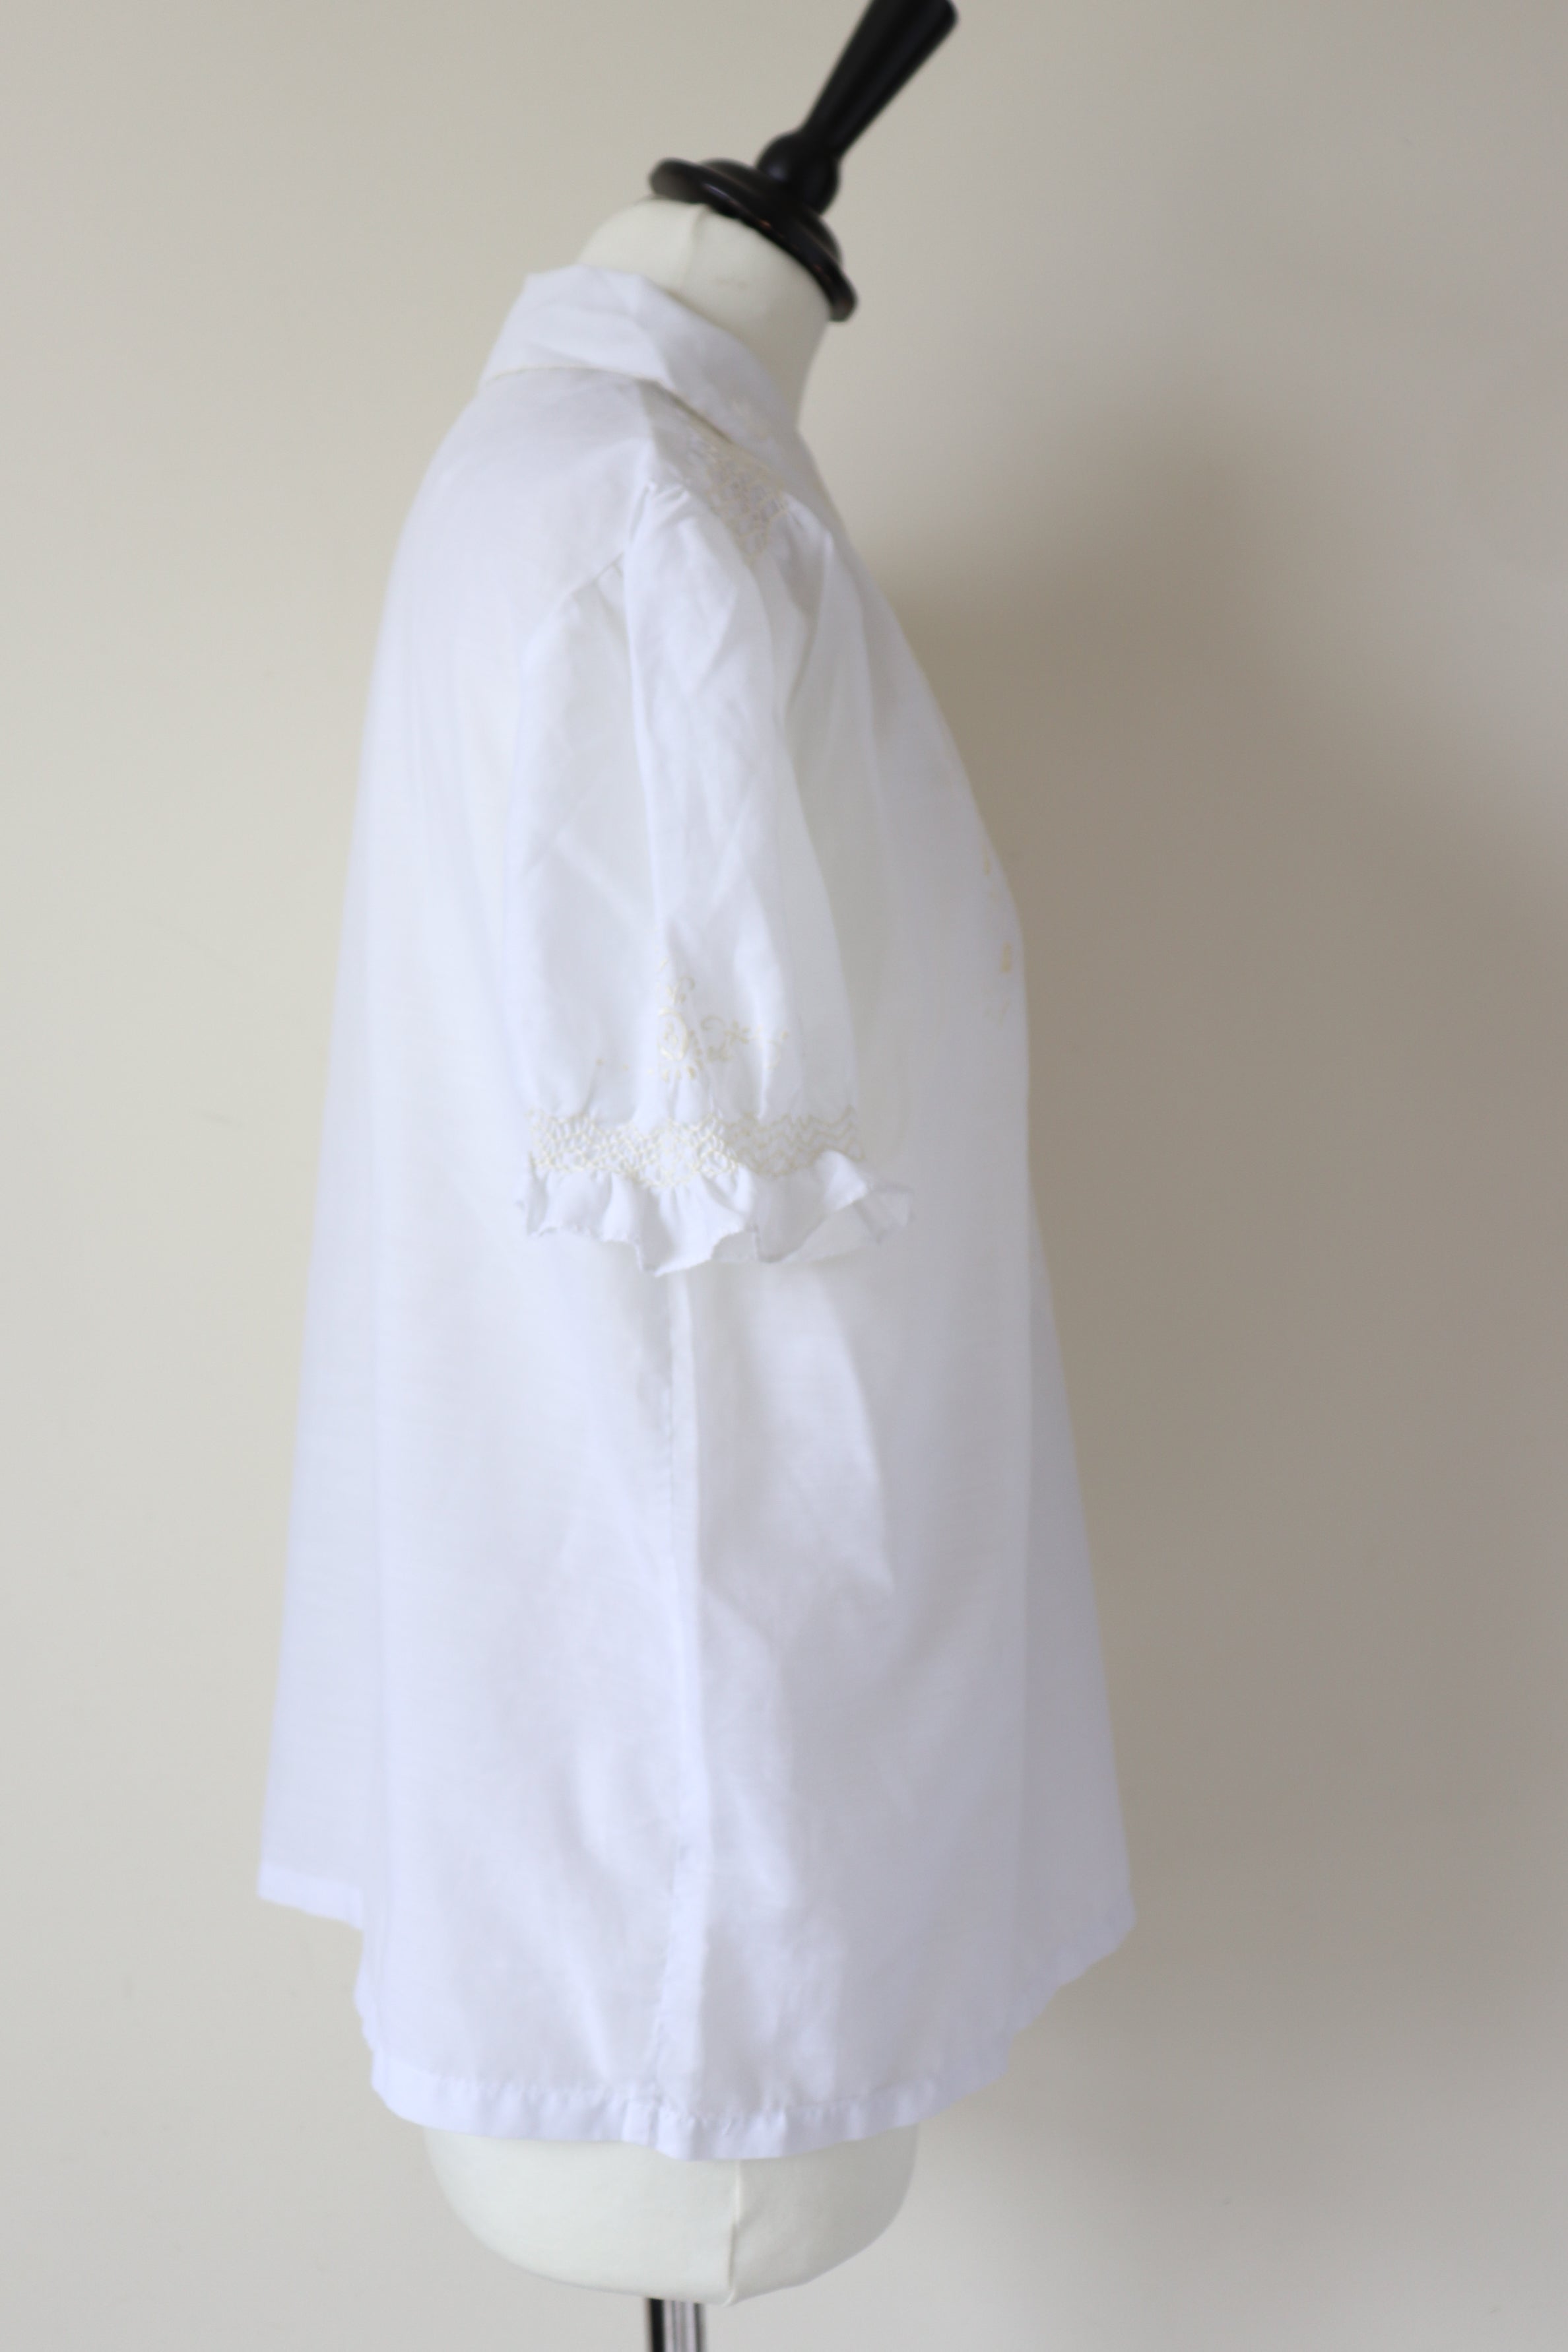 Vintage 1970s Tyrol Peasant Top - Short Sleeves - White - M / UK 12